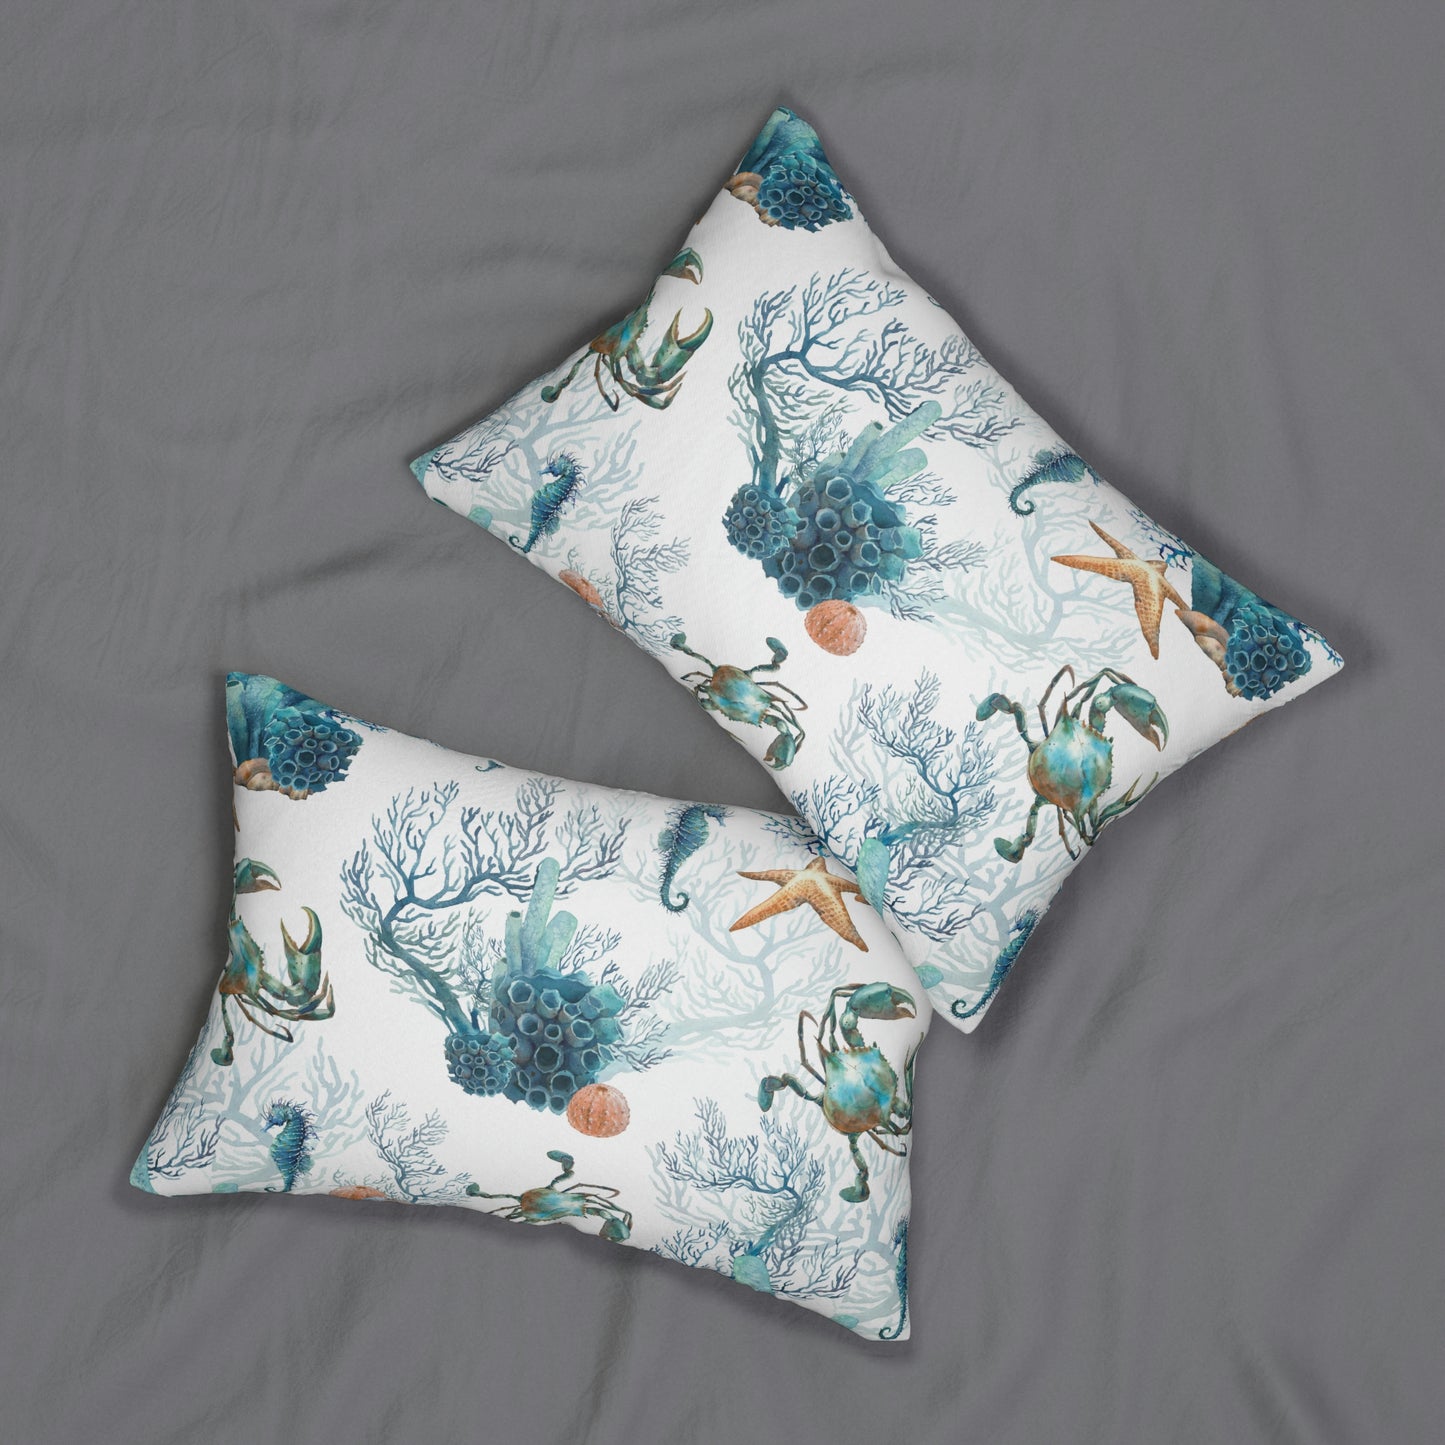 Watercolor Coral Reef Spun Polyester Lumbar Pillow